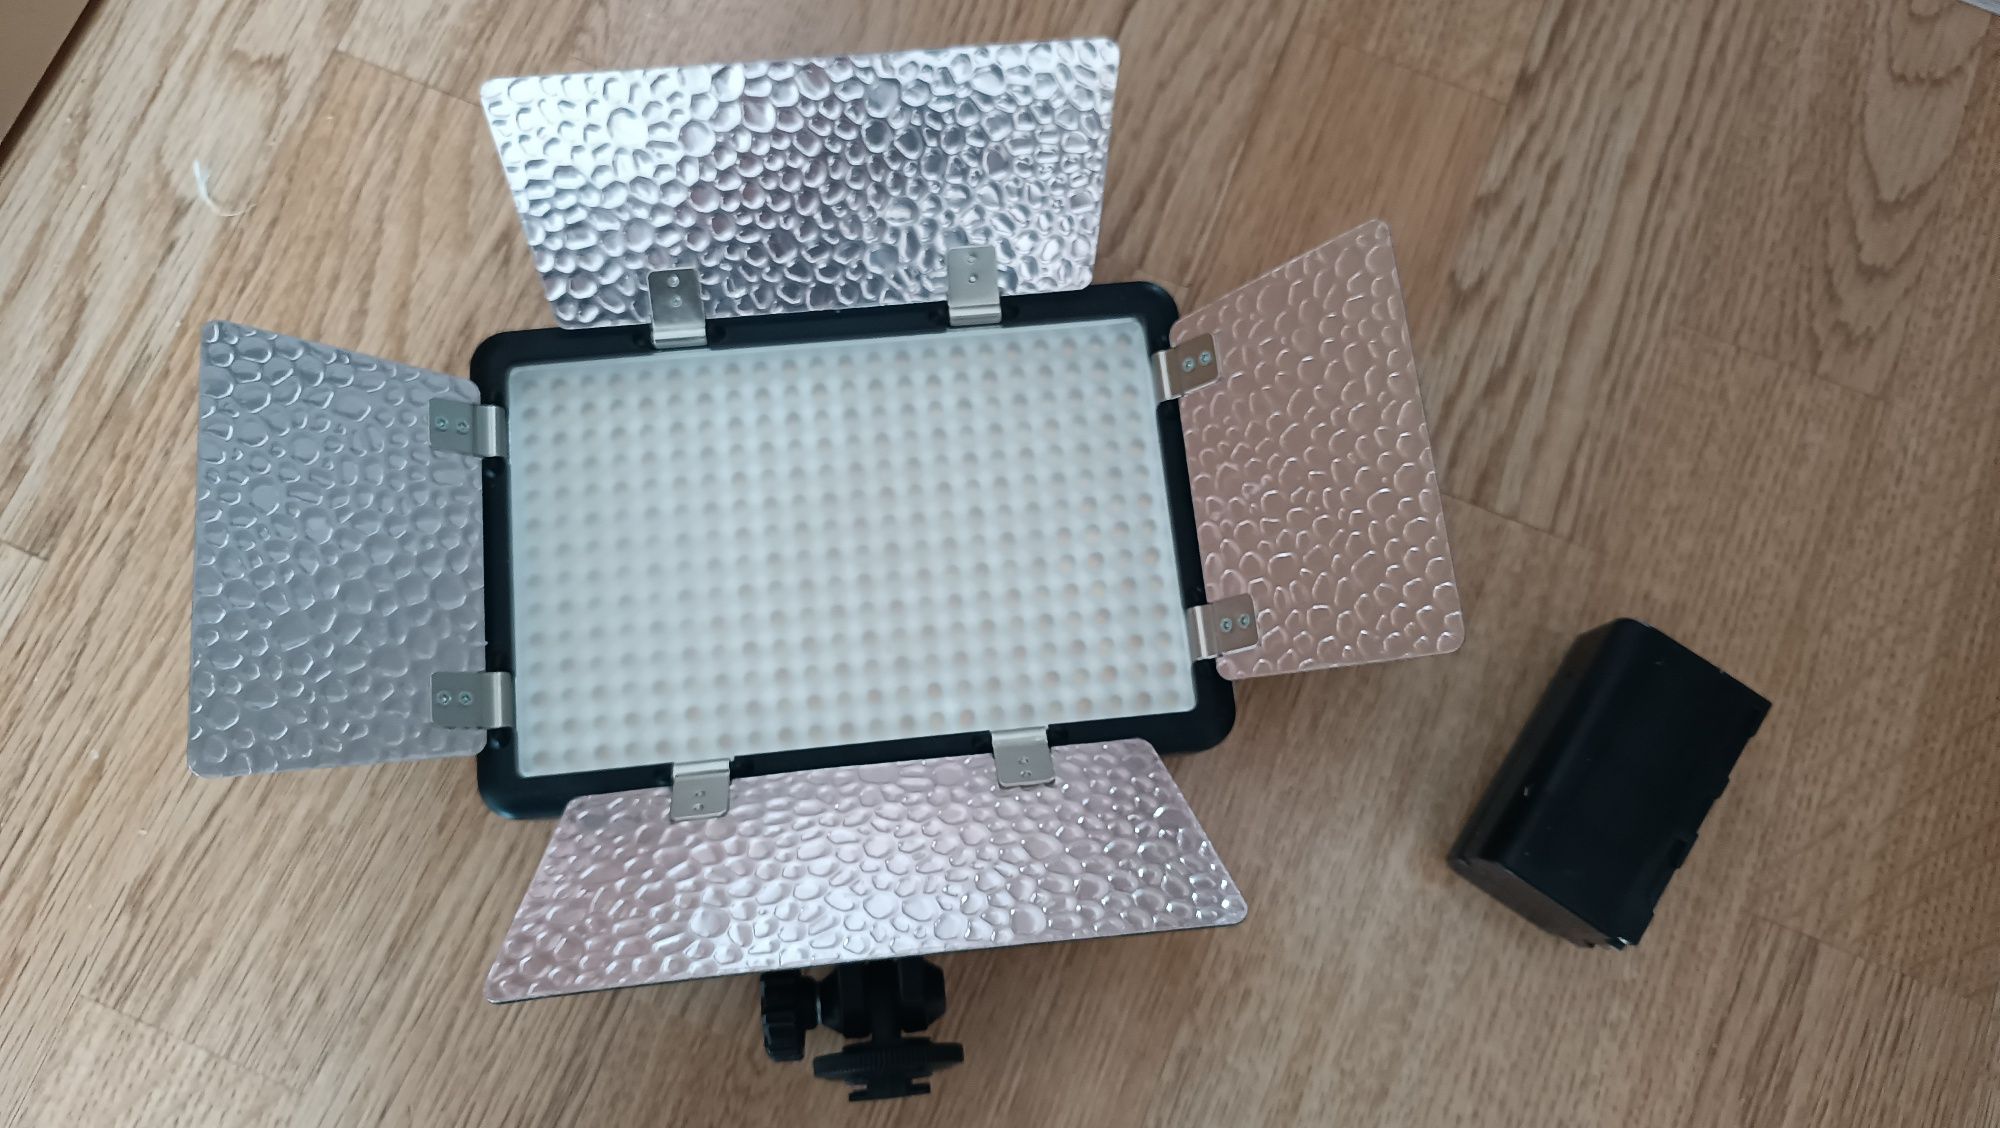 Godox LED308C II осветитель светодиодный, накамерный свет.
https://var